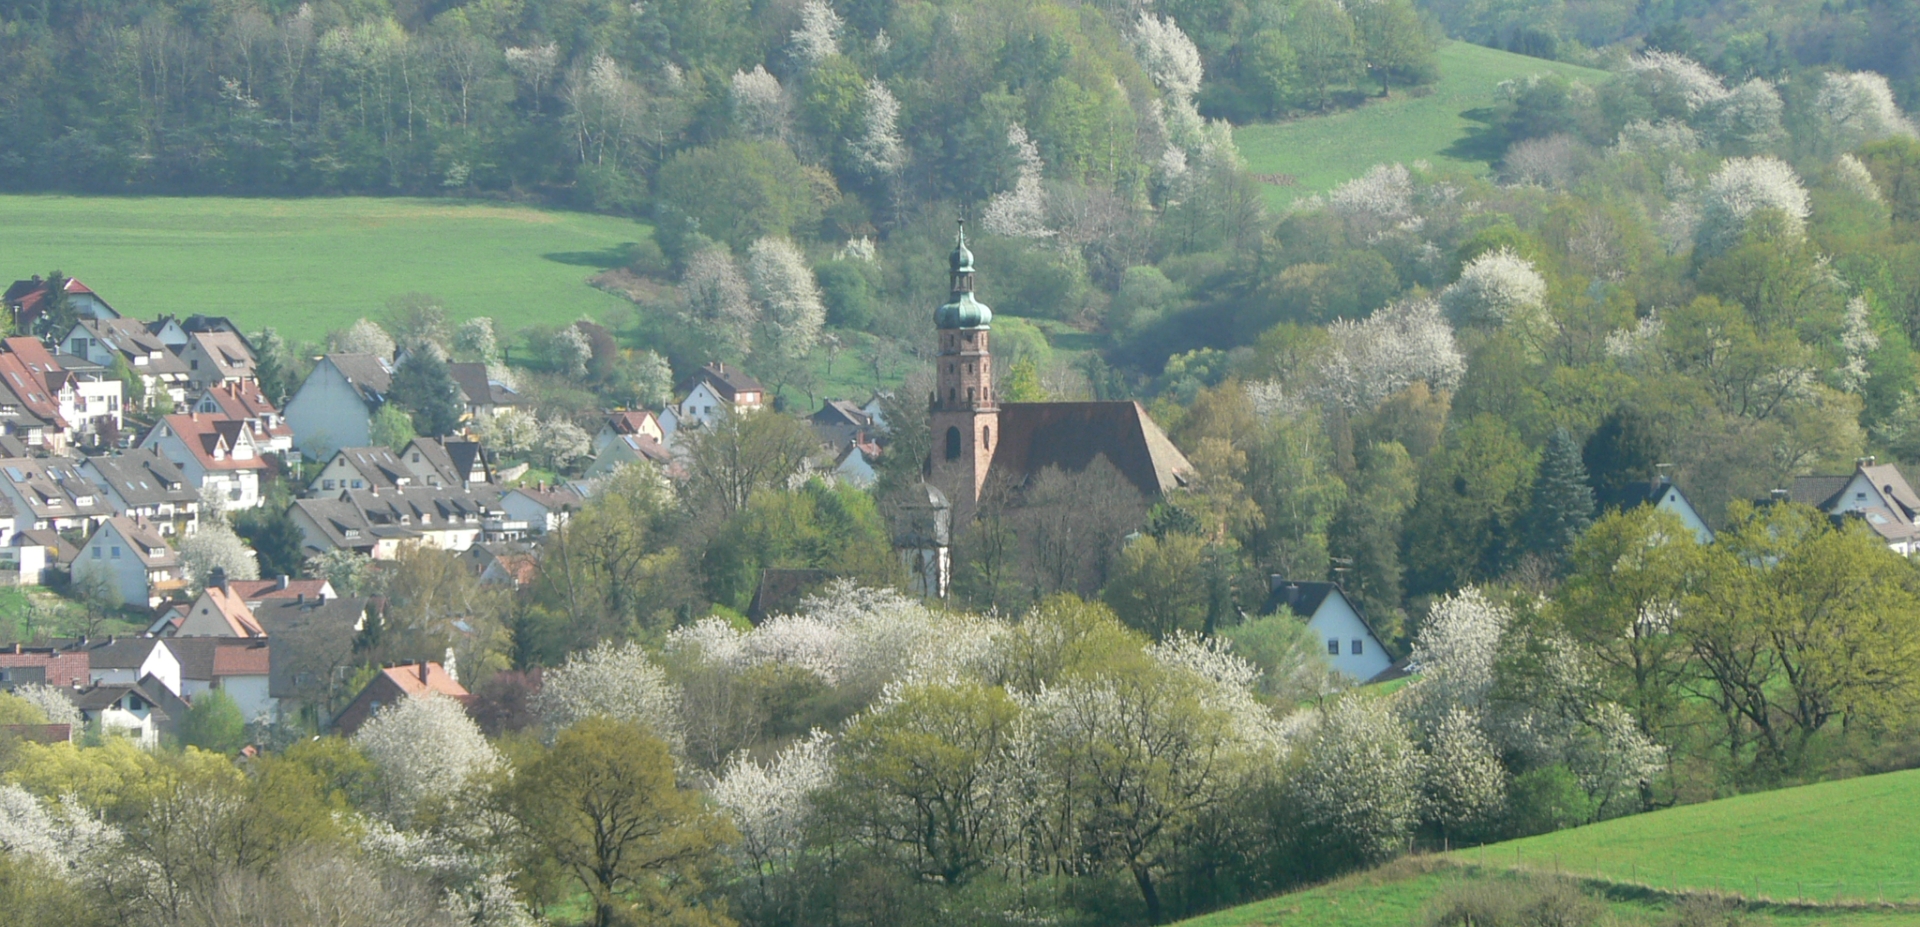 Headerbild der Gemeinde Bessenbach